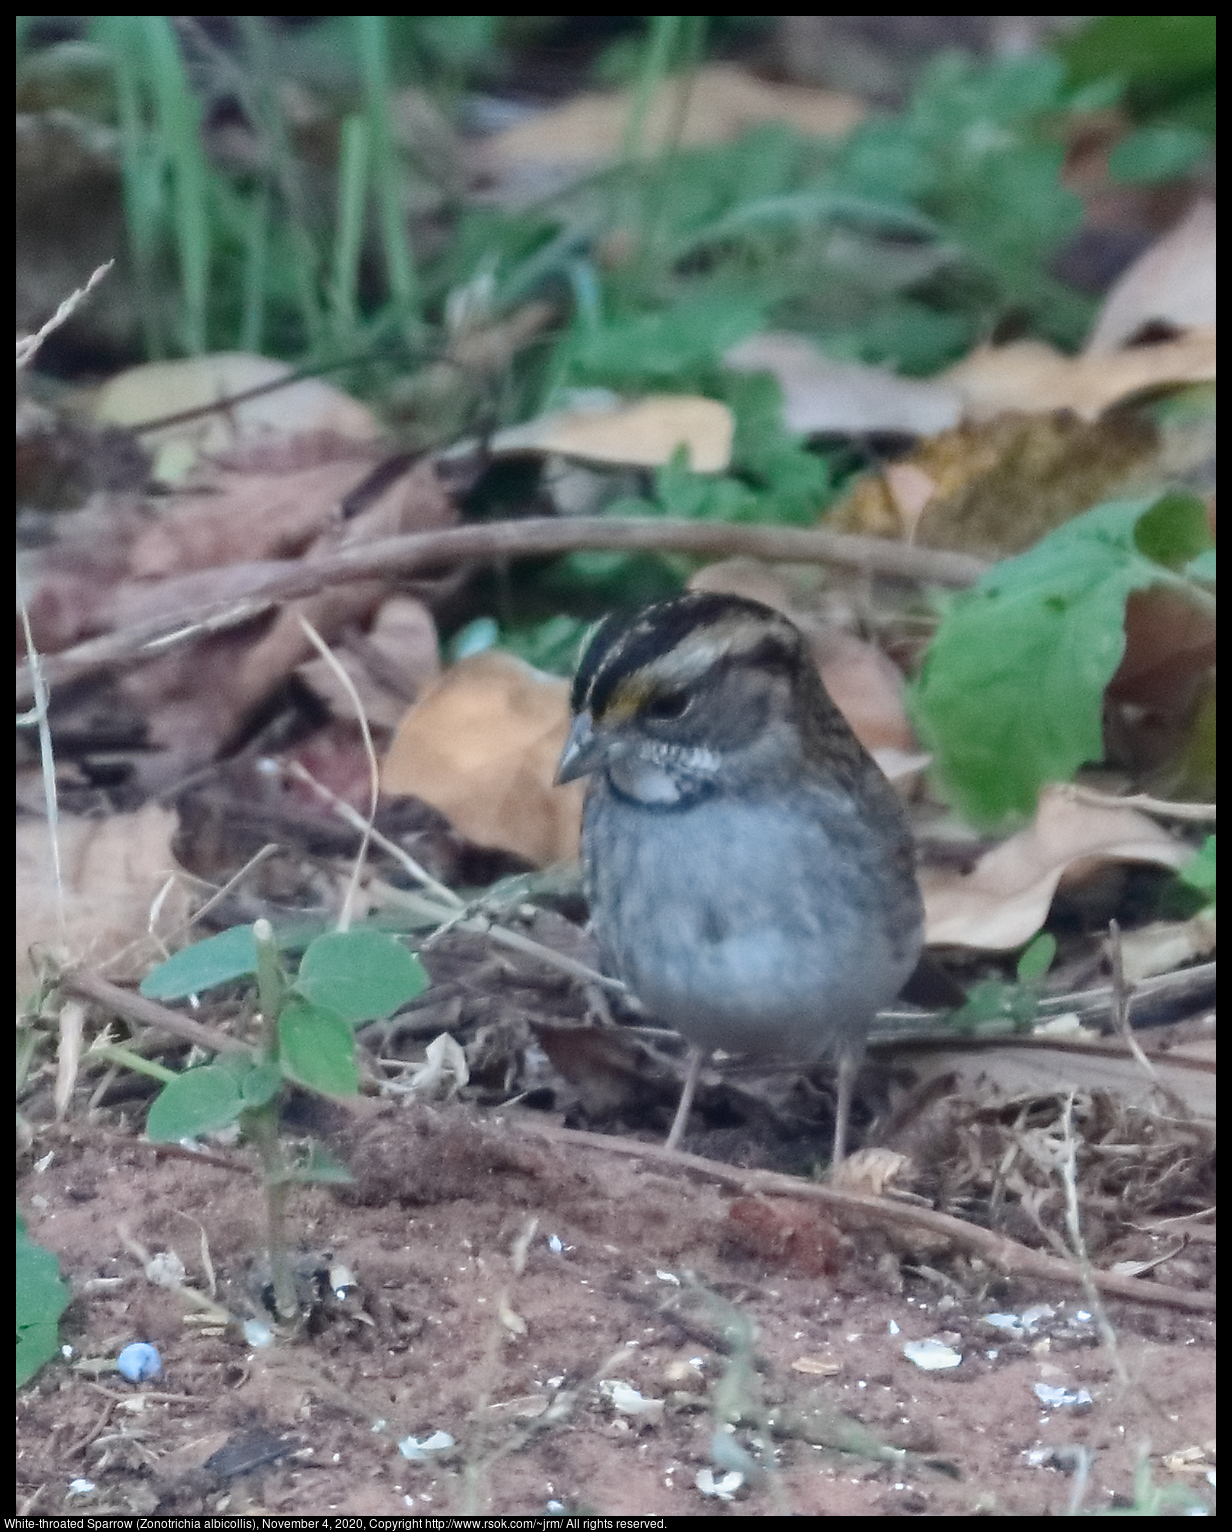 White-throated Sparrow (Zonotrichia albicollis), November 4, 2020